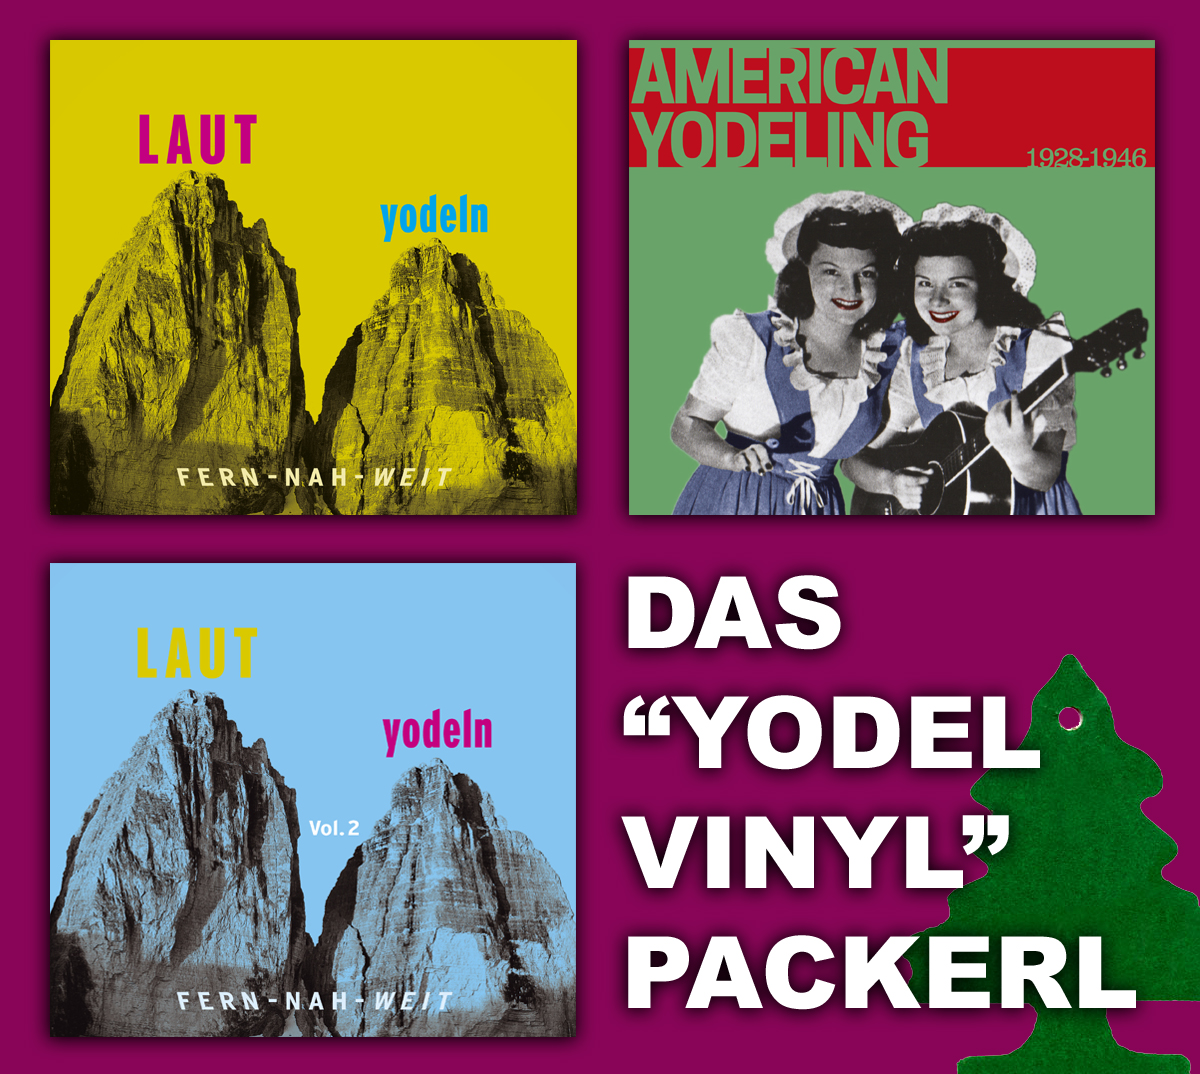 Yodel-Vinyl-Packerl 1